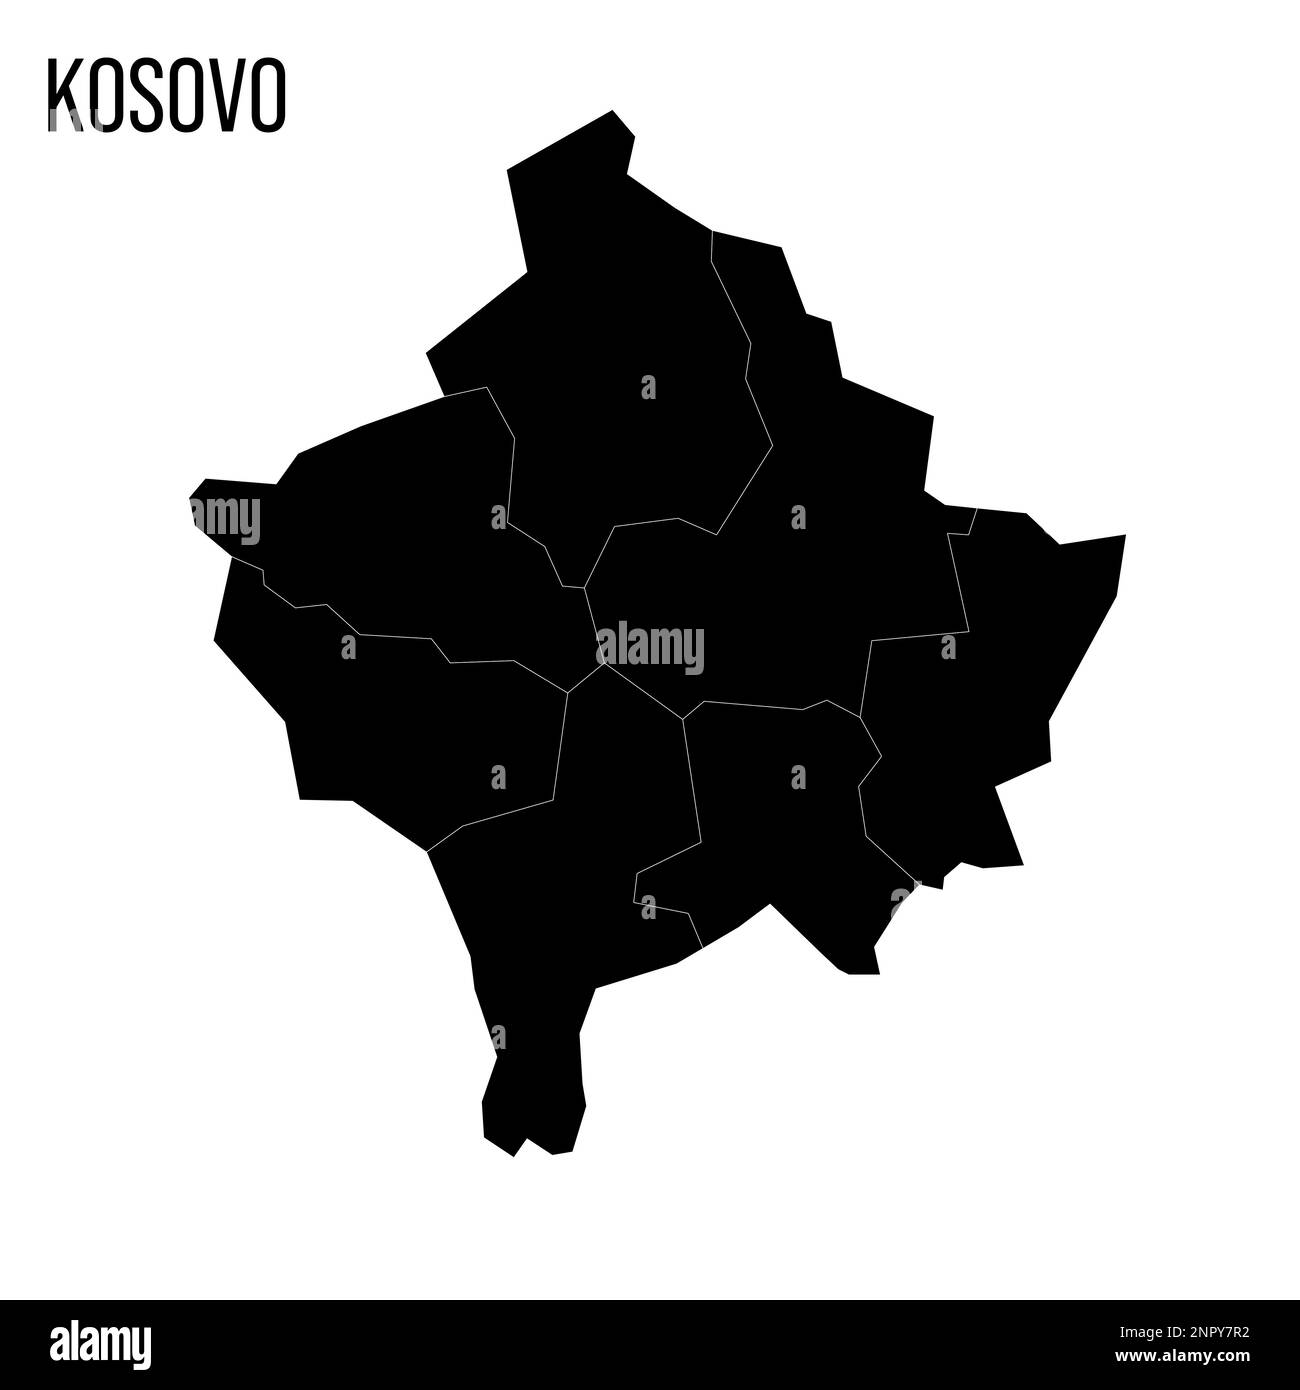 Mappa politica del Kosovo delle divisioni amministrative - distretti. Mappa nera vuota e nome del paese. Illustrazione Vettoriale